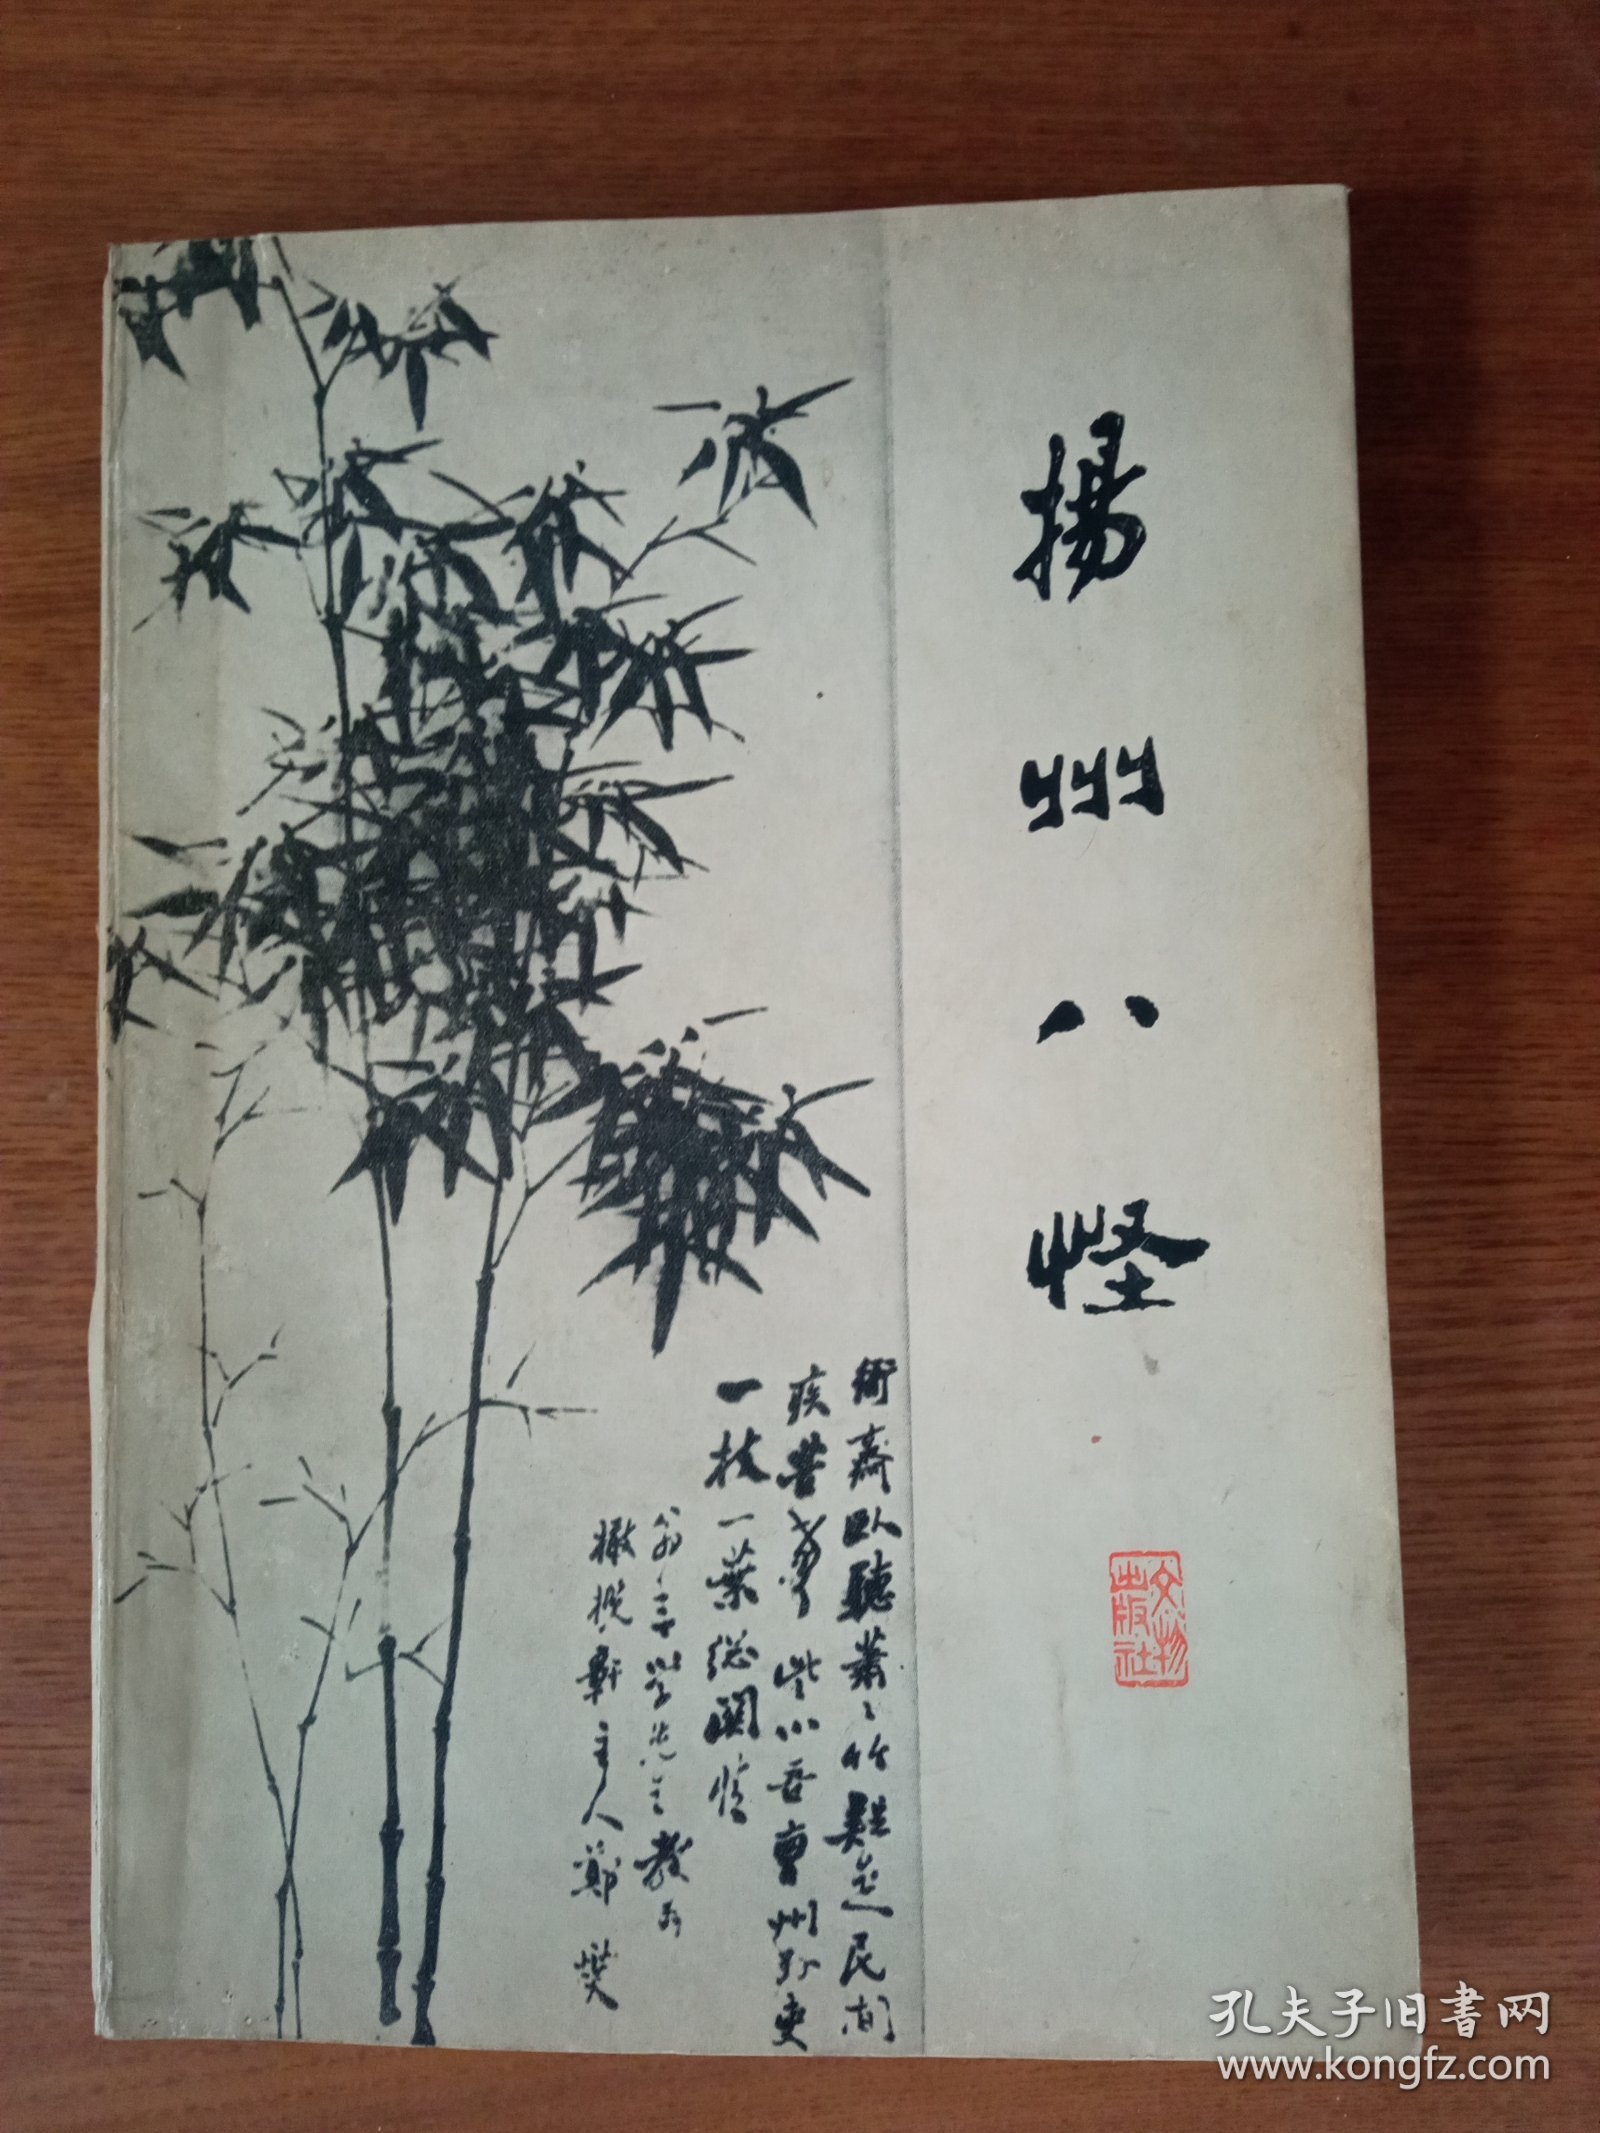 《扬州八怪》个人藏书内页近全新，没有翻阅过，封面自然旧，如图所示。